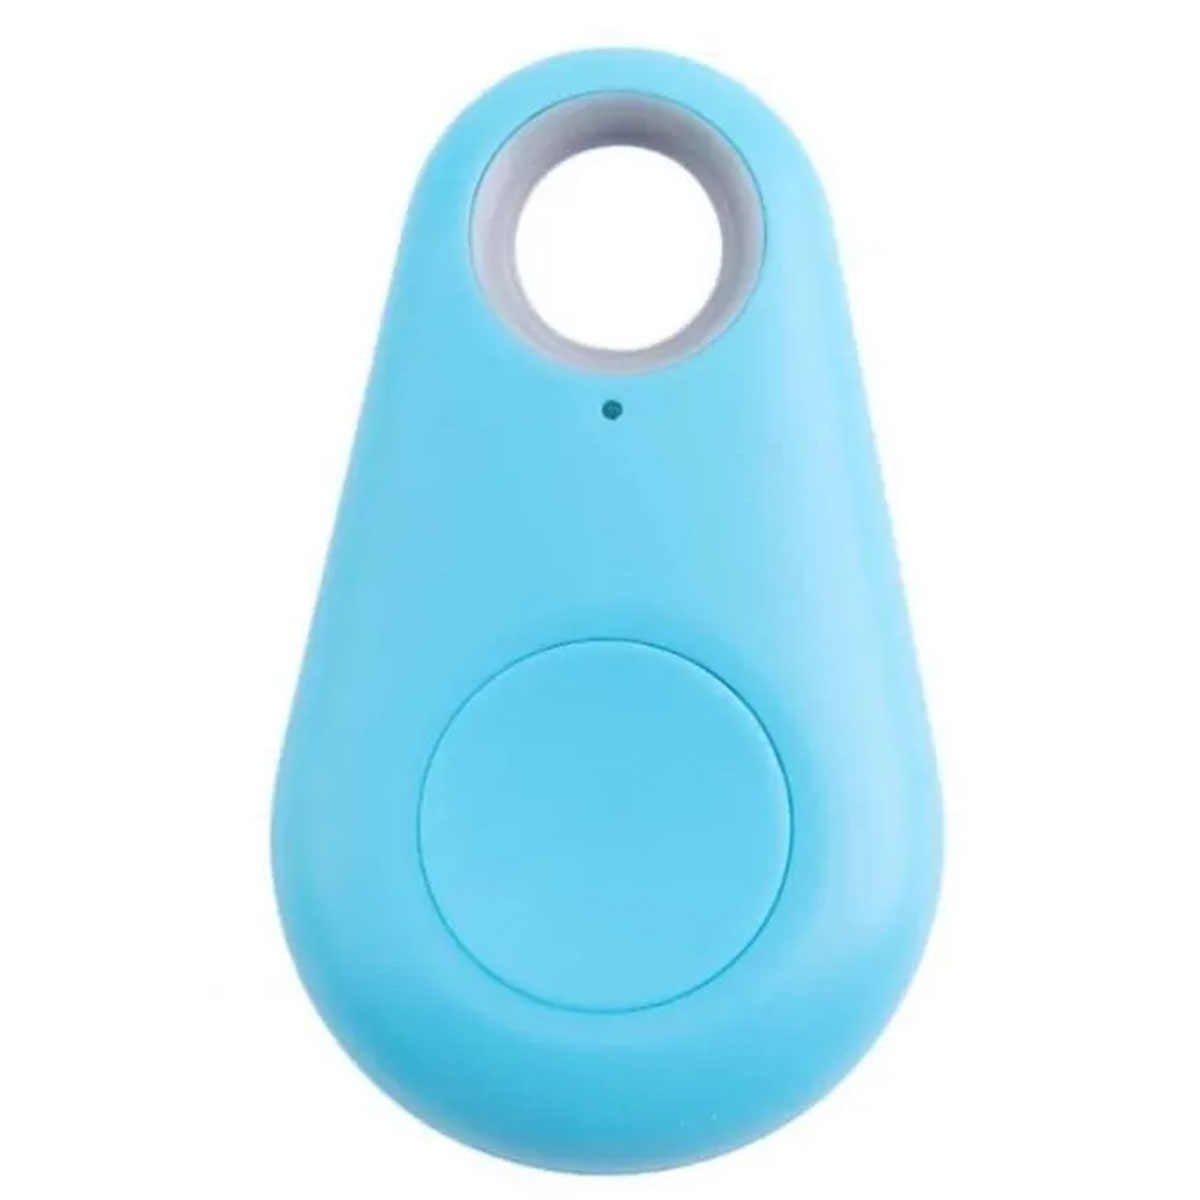 Метка брелок локатор iTag антипотеряшка bluetooth для поиска ключей, телефона, цвет голубой